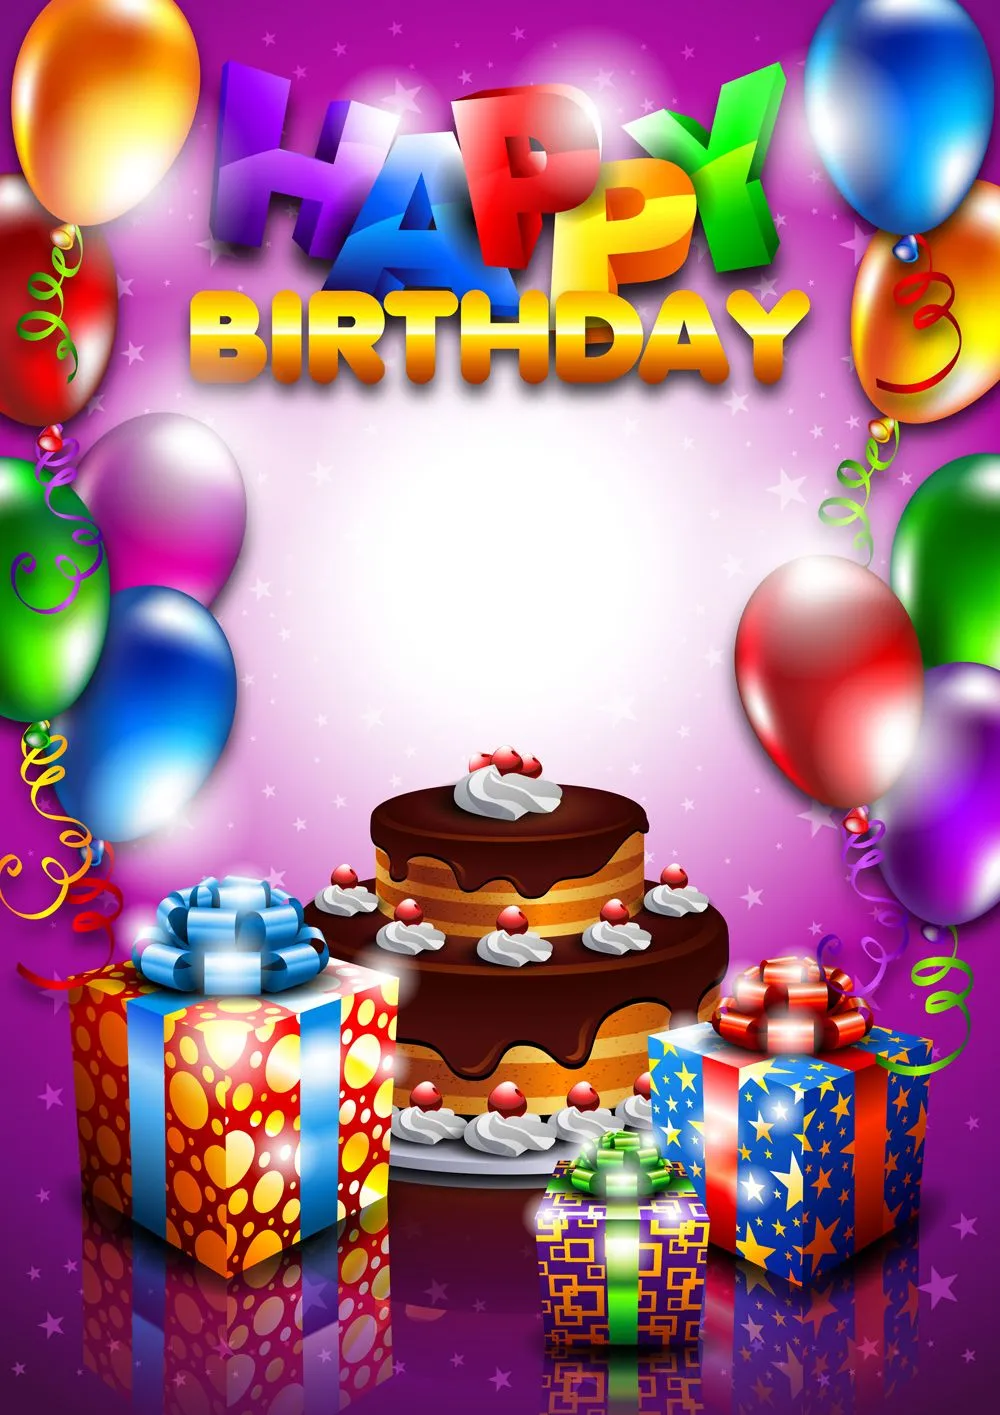 Tarjeta de cumpleaños con mensaje "Happy Birthday" | Banco de ...